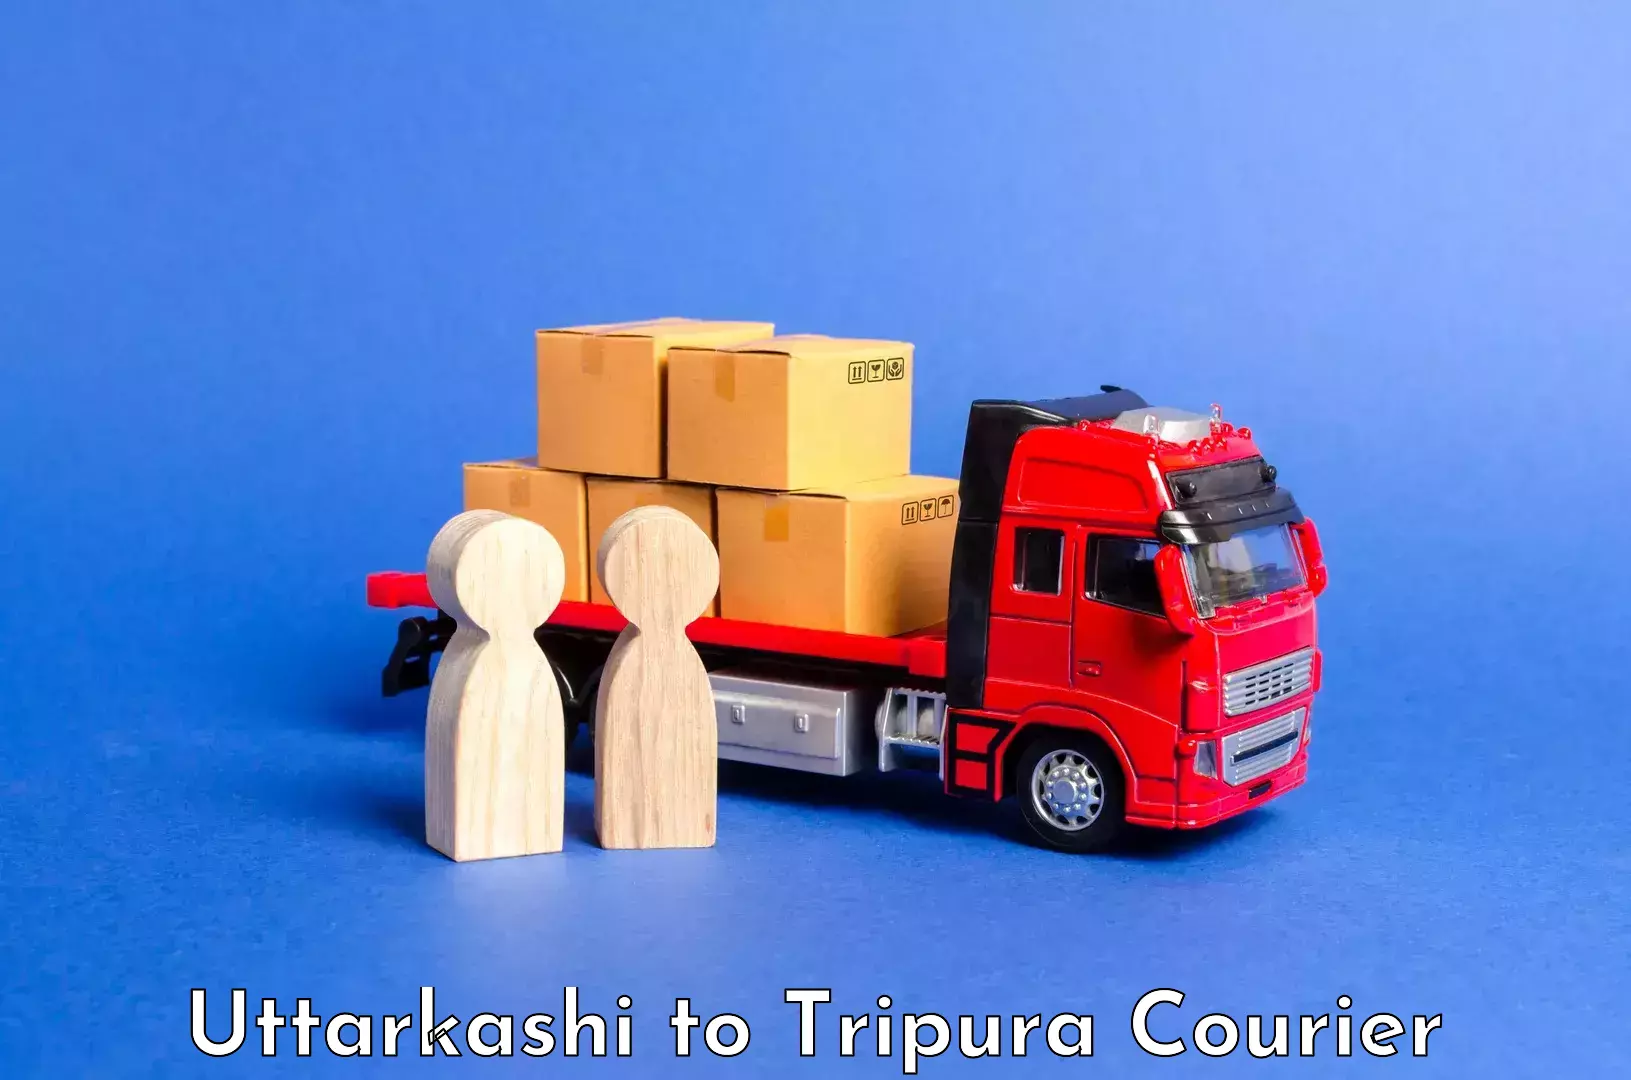 Luggage transport company Uttarkashi to Amarpur